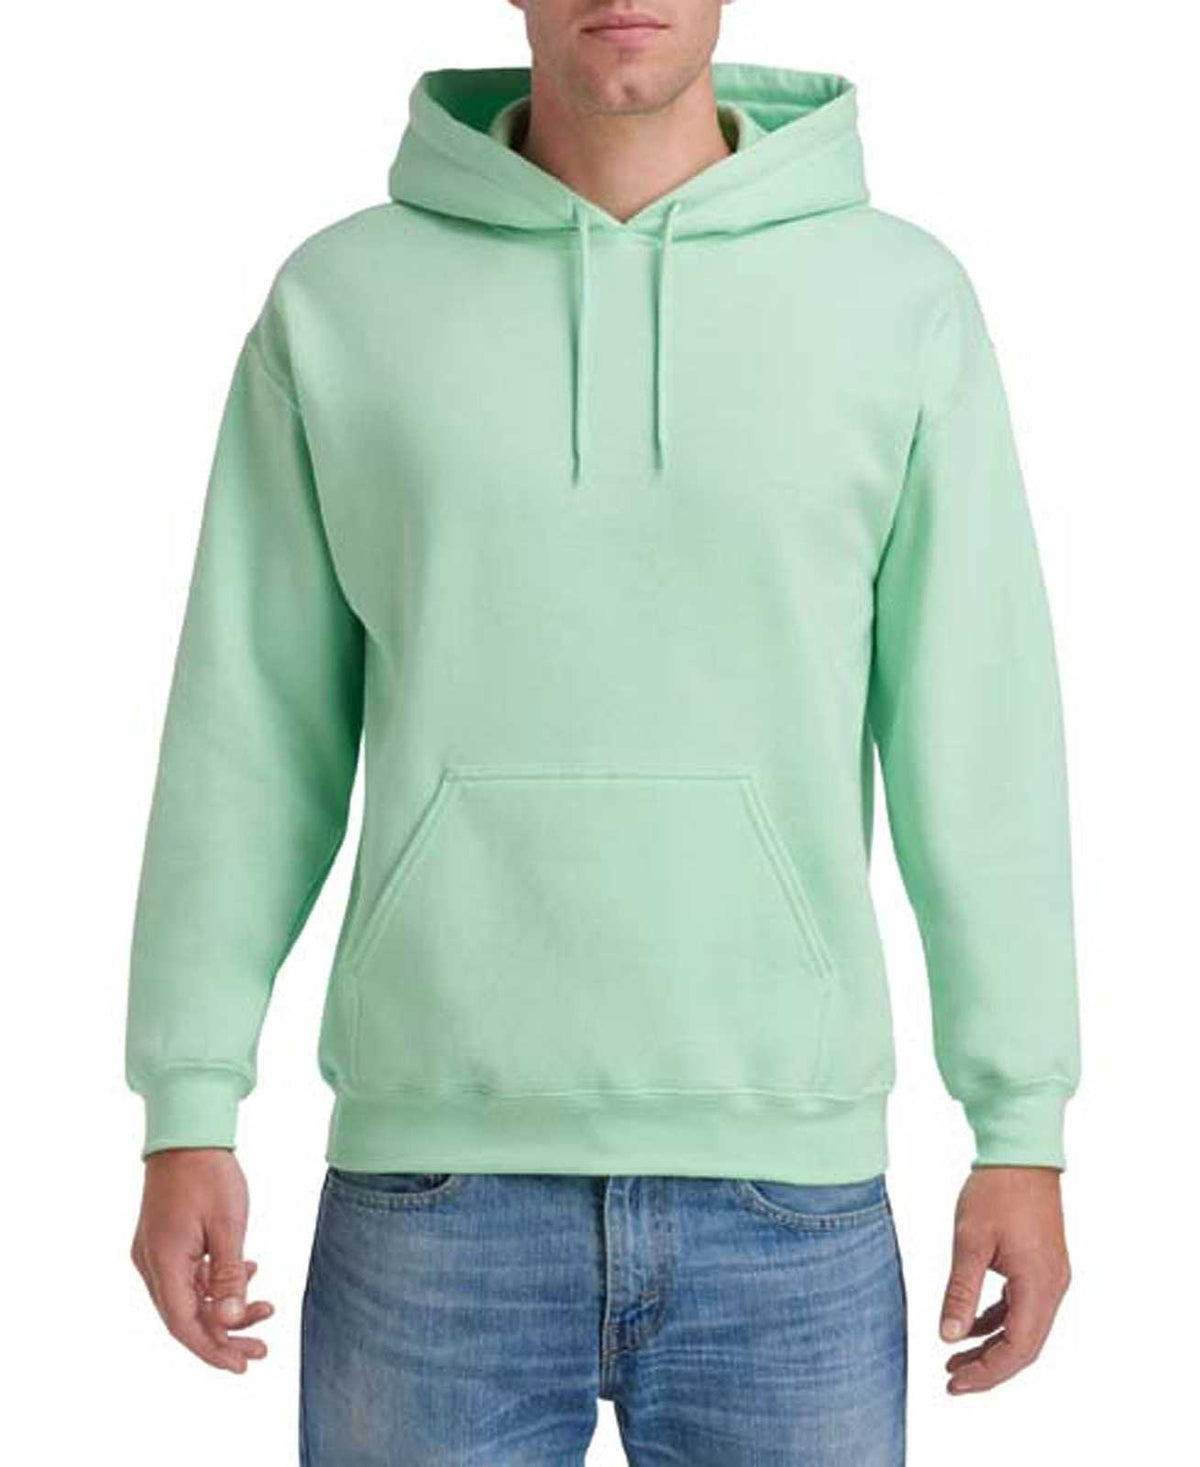 Gildan 18500 Heavy Blend Hooded Sweatshirt - Mint Green - HIT a Double